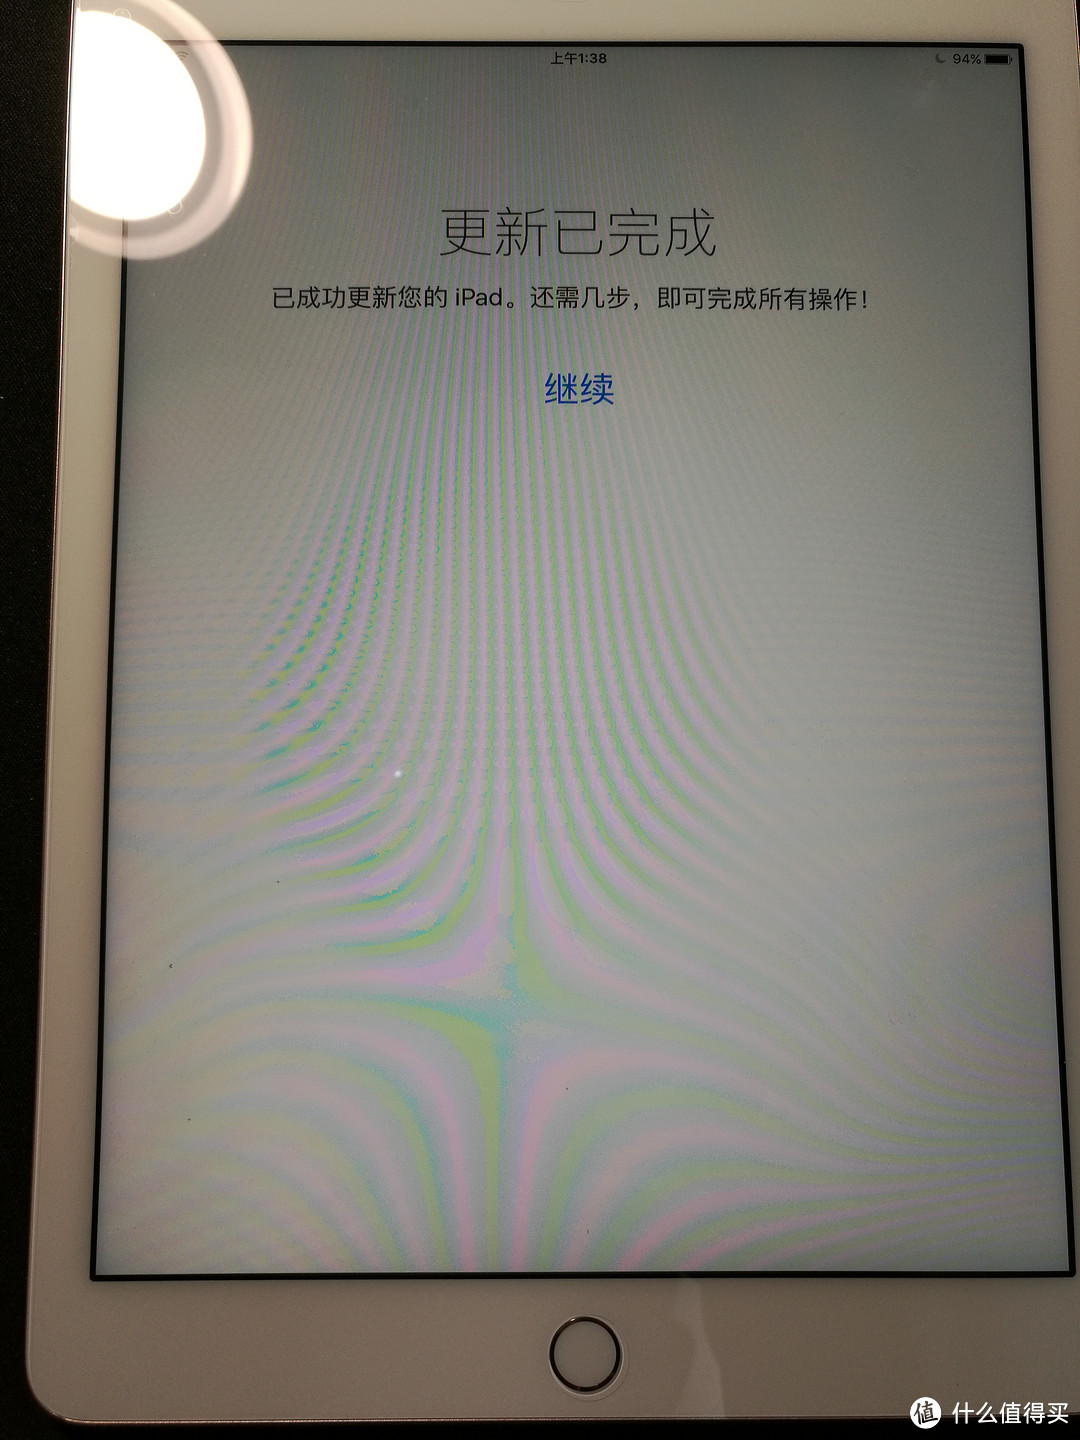 没有犹豫的 Apple 苹果 iPad Pro 9.7寸玫瑰金色